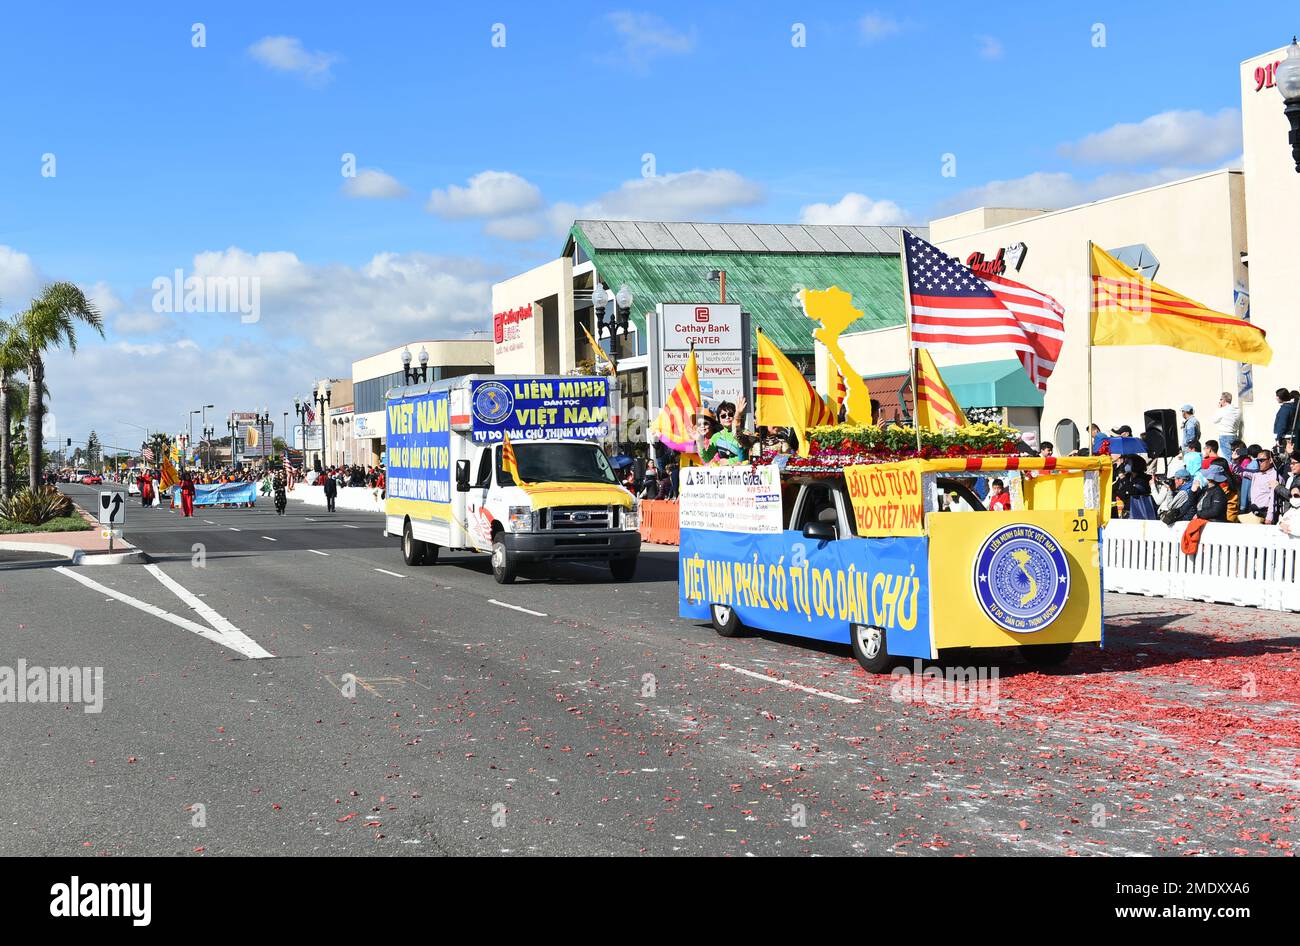 WESTMINSTER, CALIFORNIA - 22 GENNAIO 2023: Elezioni libere per banner Viet Nam su veicolo alla Tet Parade che celebra l'anno del Cat. Foto Stock